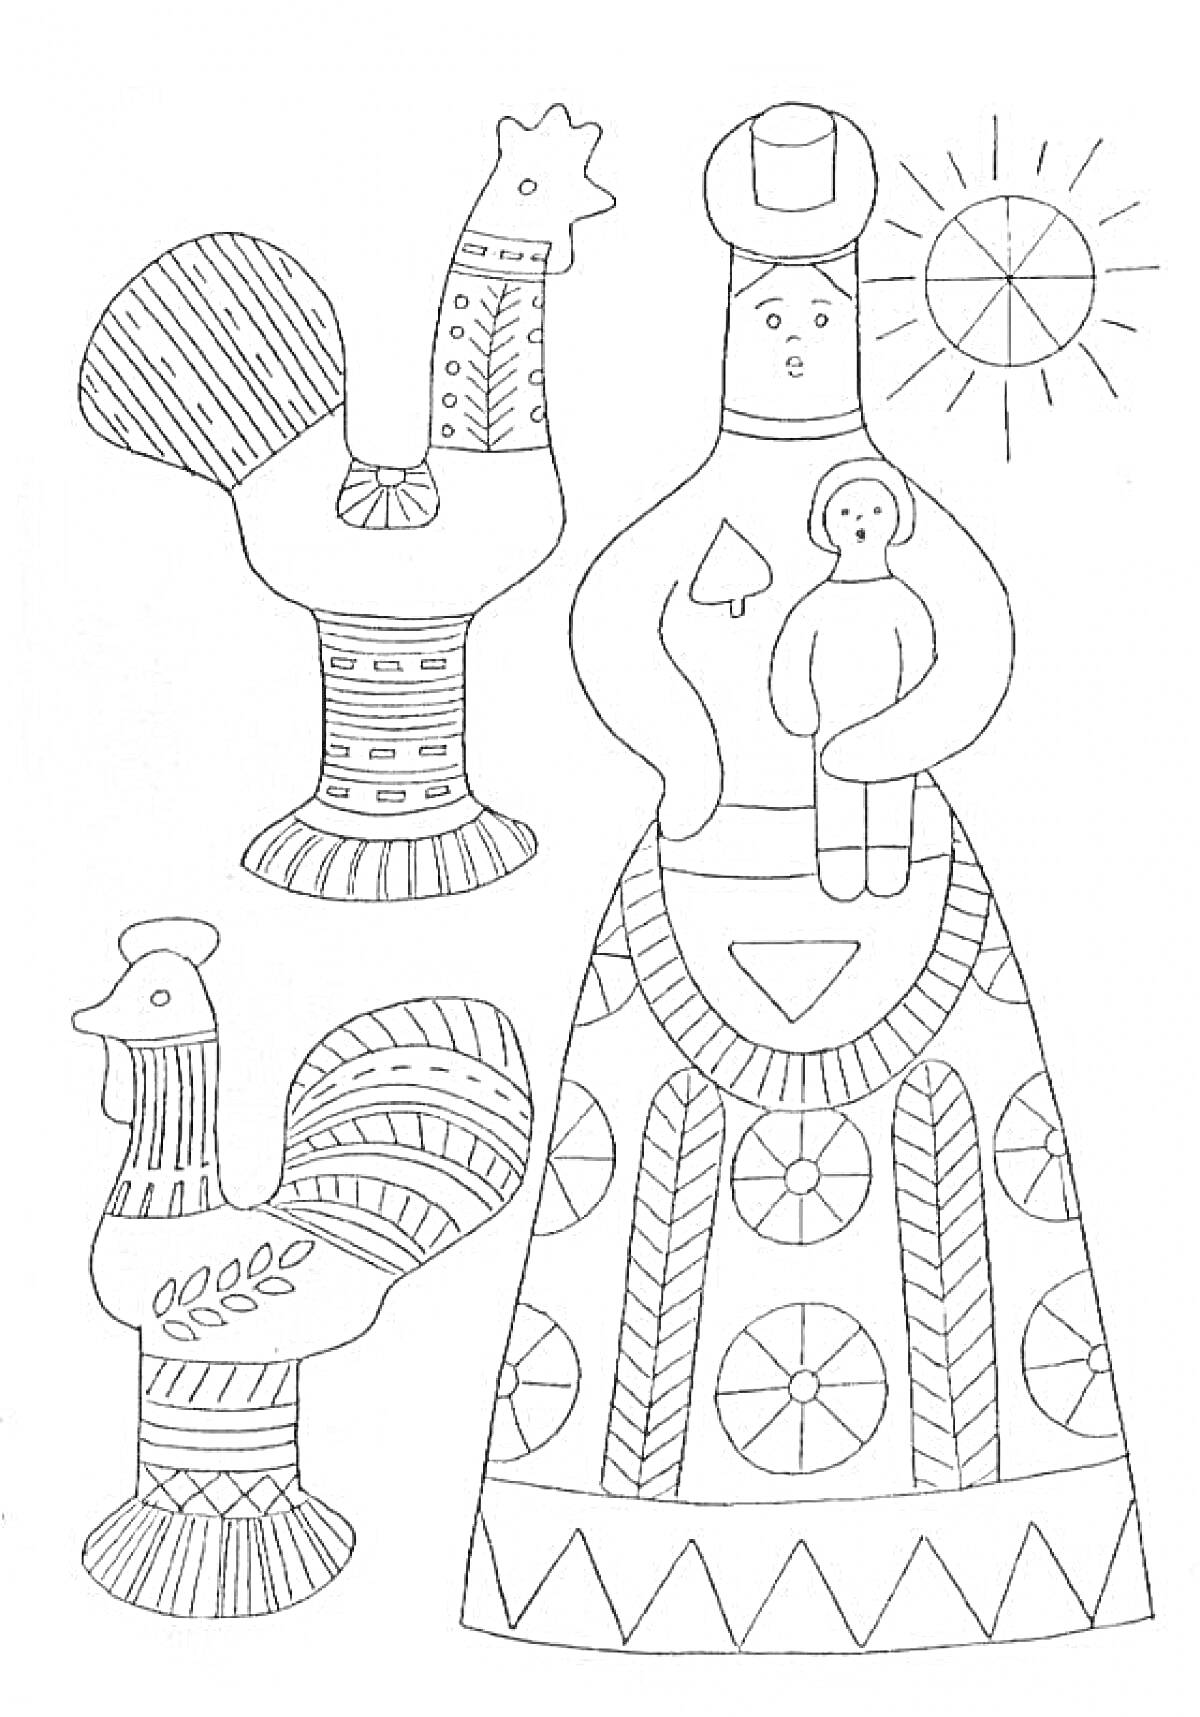 Филимоновская игрушка - женщина с ребенком, два петуха, солнце